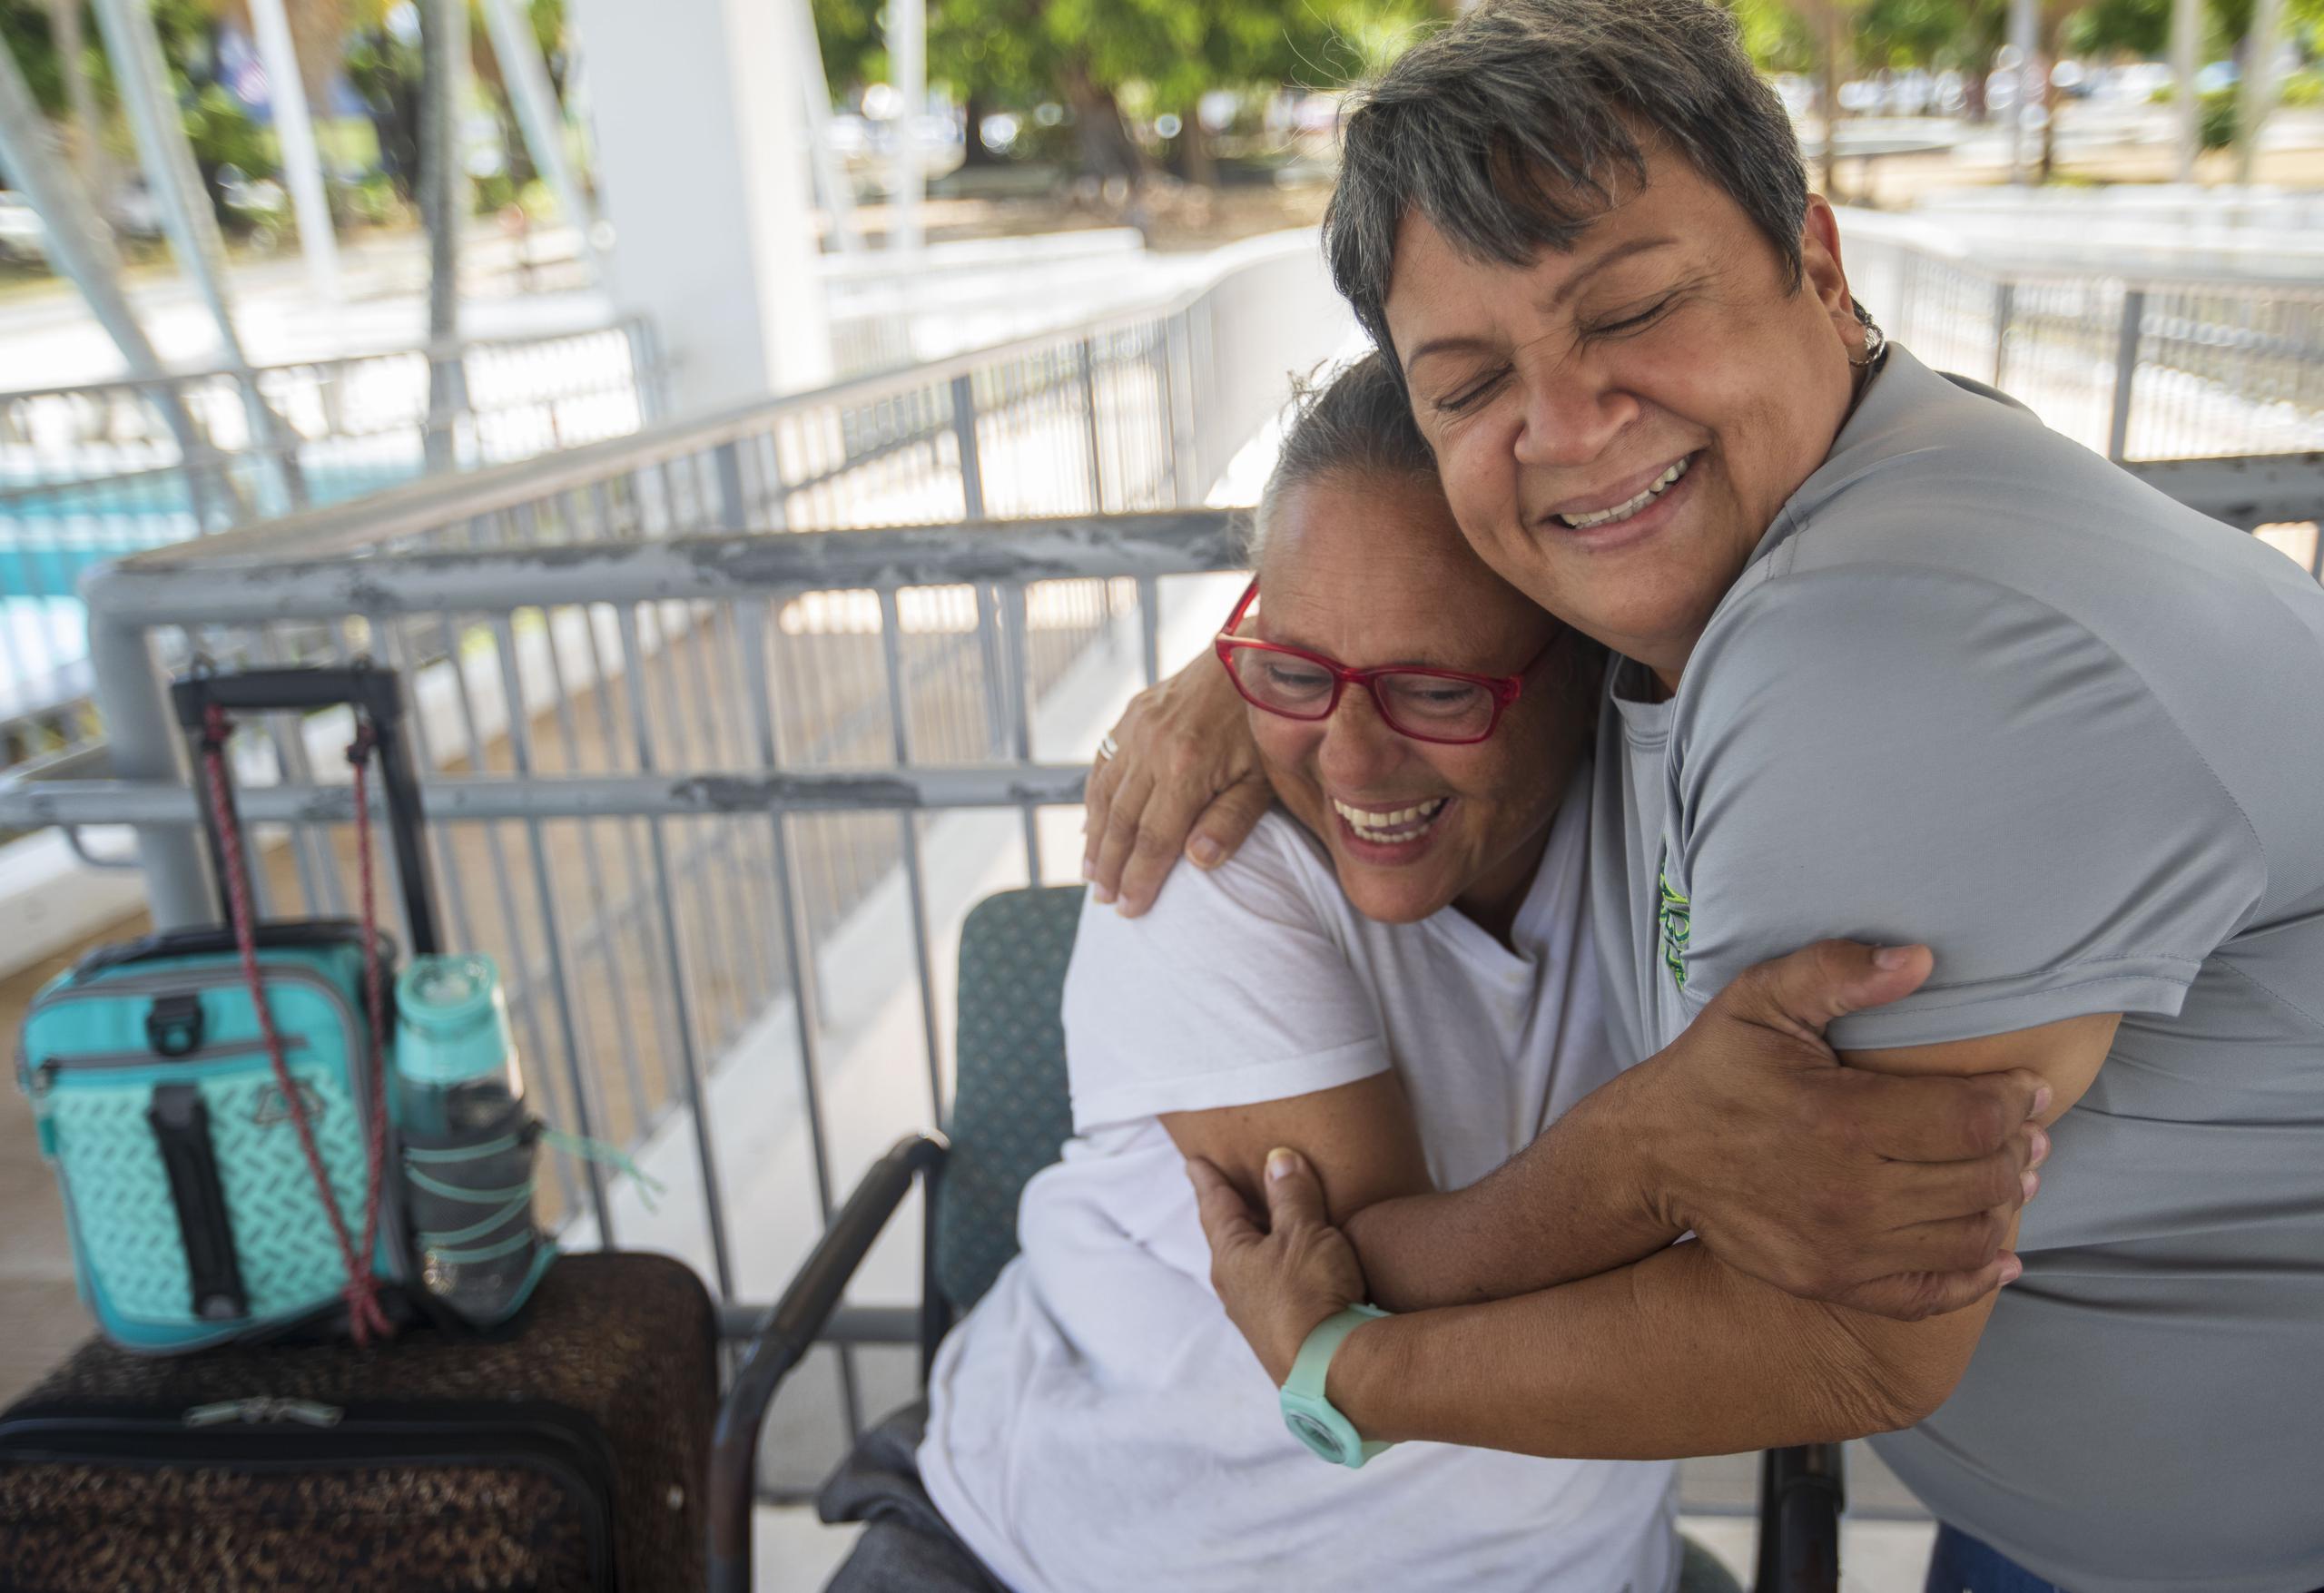 Juanita Reyes Guadalupe (sentada) se abraza con Carmen Romero Dones, quien vivió hace años en la calle y ahora asiste a mujeres que están sin hogar. Gracias al apoyo de Carmen, Juanita logró recientemente estabilizar su situación en una vivienda permanente.